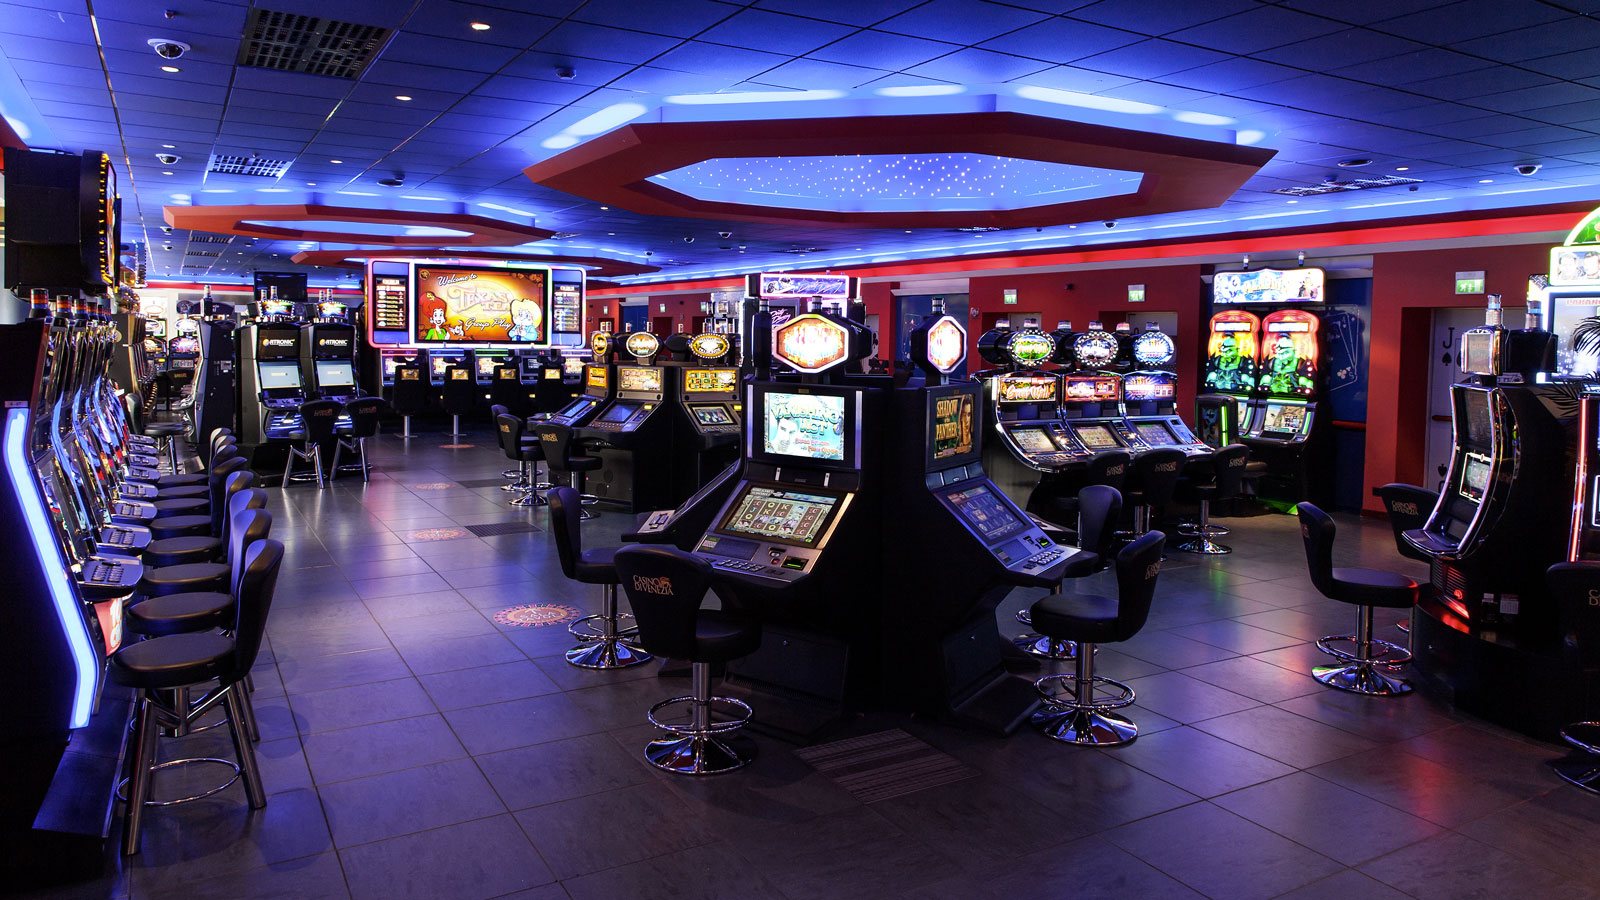 New retro casino с апк. Зал игровых автоматов Торнадо. Игровые залы казино. Игровой зал автоматы казино. Игровой зал с игровыми автоматами.